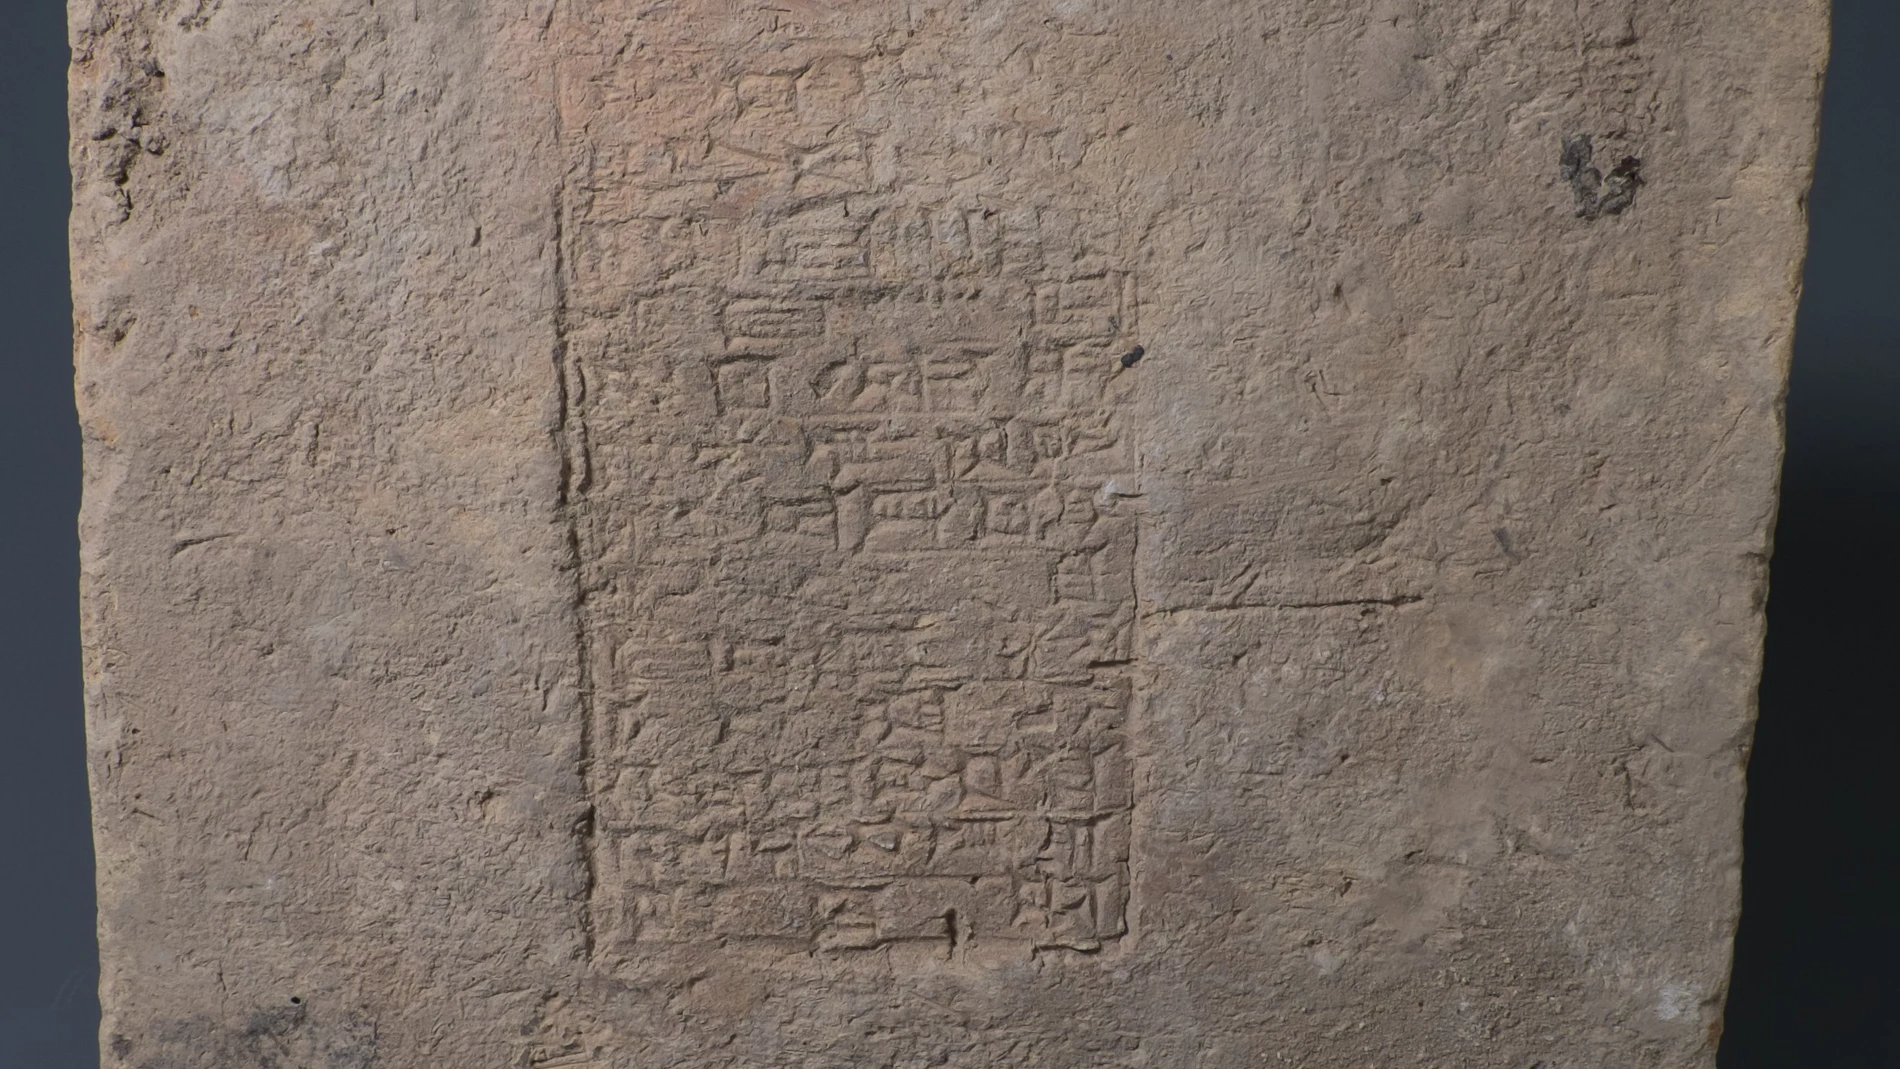 Ladrillo que data del reinado de Nabucodonosor II (ca. 604 a 562 a.C.) según la interpretación de la inscripción. Este objeto fue saqueado de su contexto original antes de ser adquirido por el Museo Slemani y almacenado en dicho museo con el acuerdo del gobierno central.